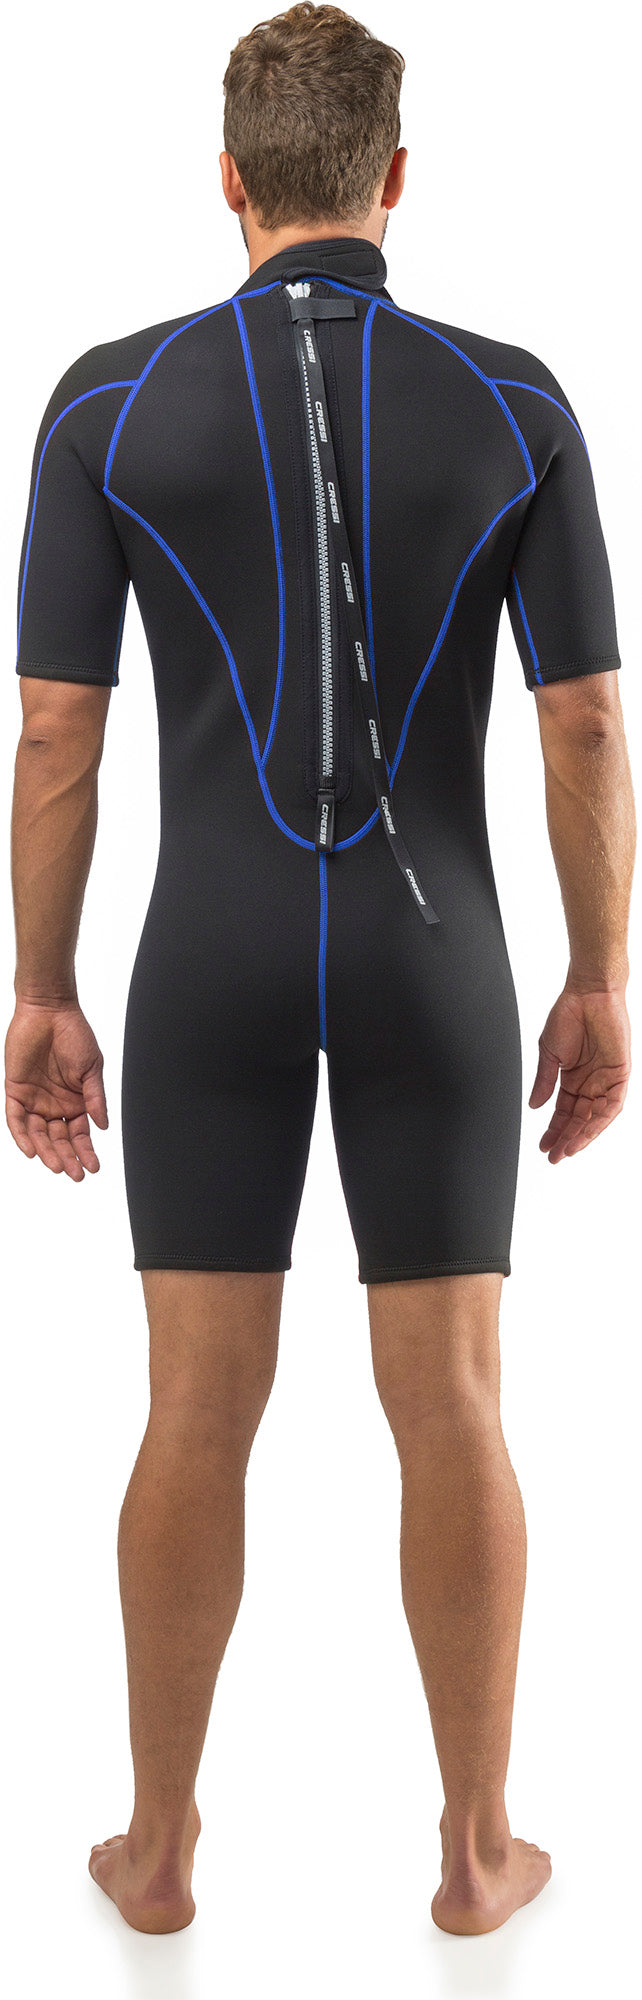 Cressi Shorty Men's Wetsuit for Water Activities - Tortuga 2.5mm Premium Neoprene